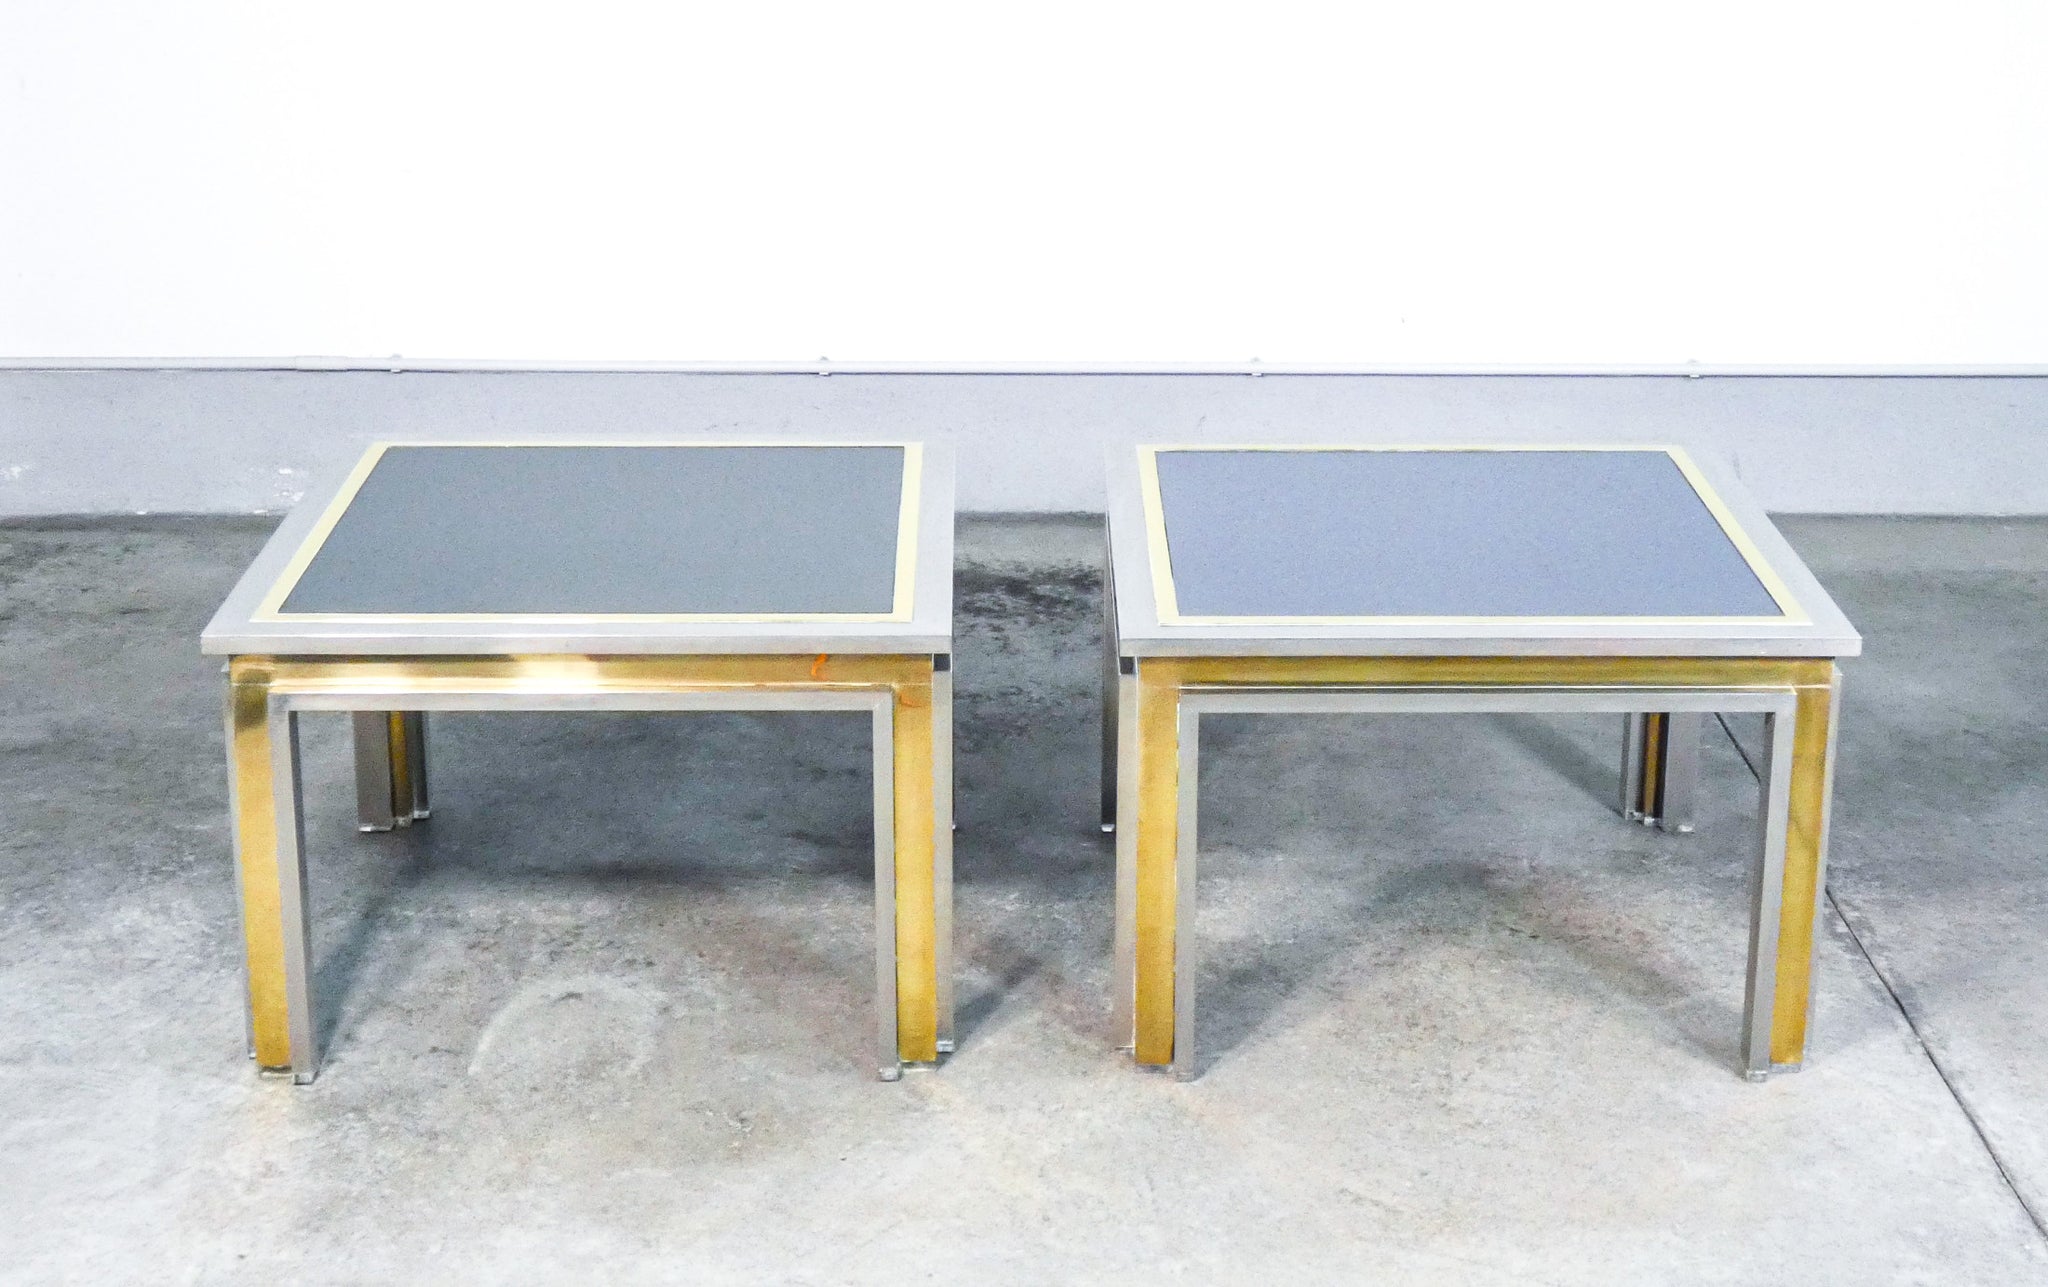 coppia tavolini salotto design romeo rega caffe tavolo basso coffee table italy